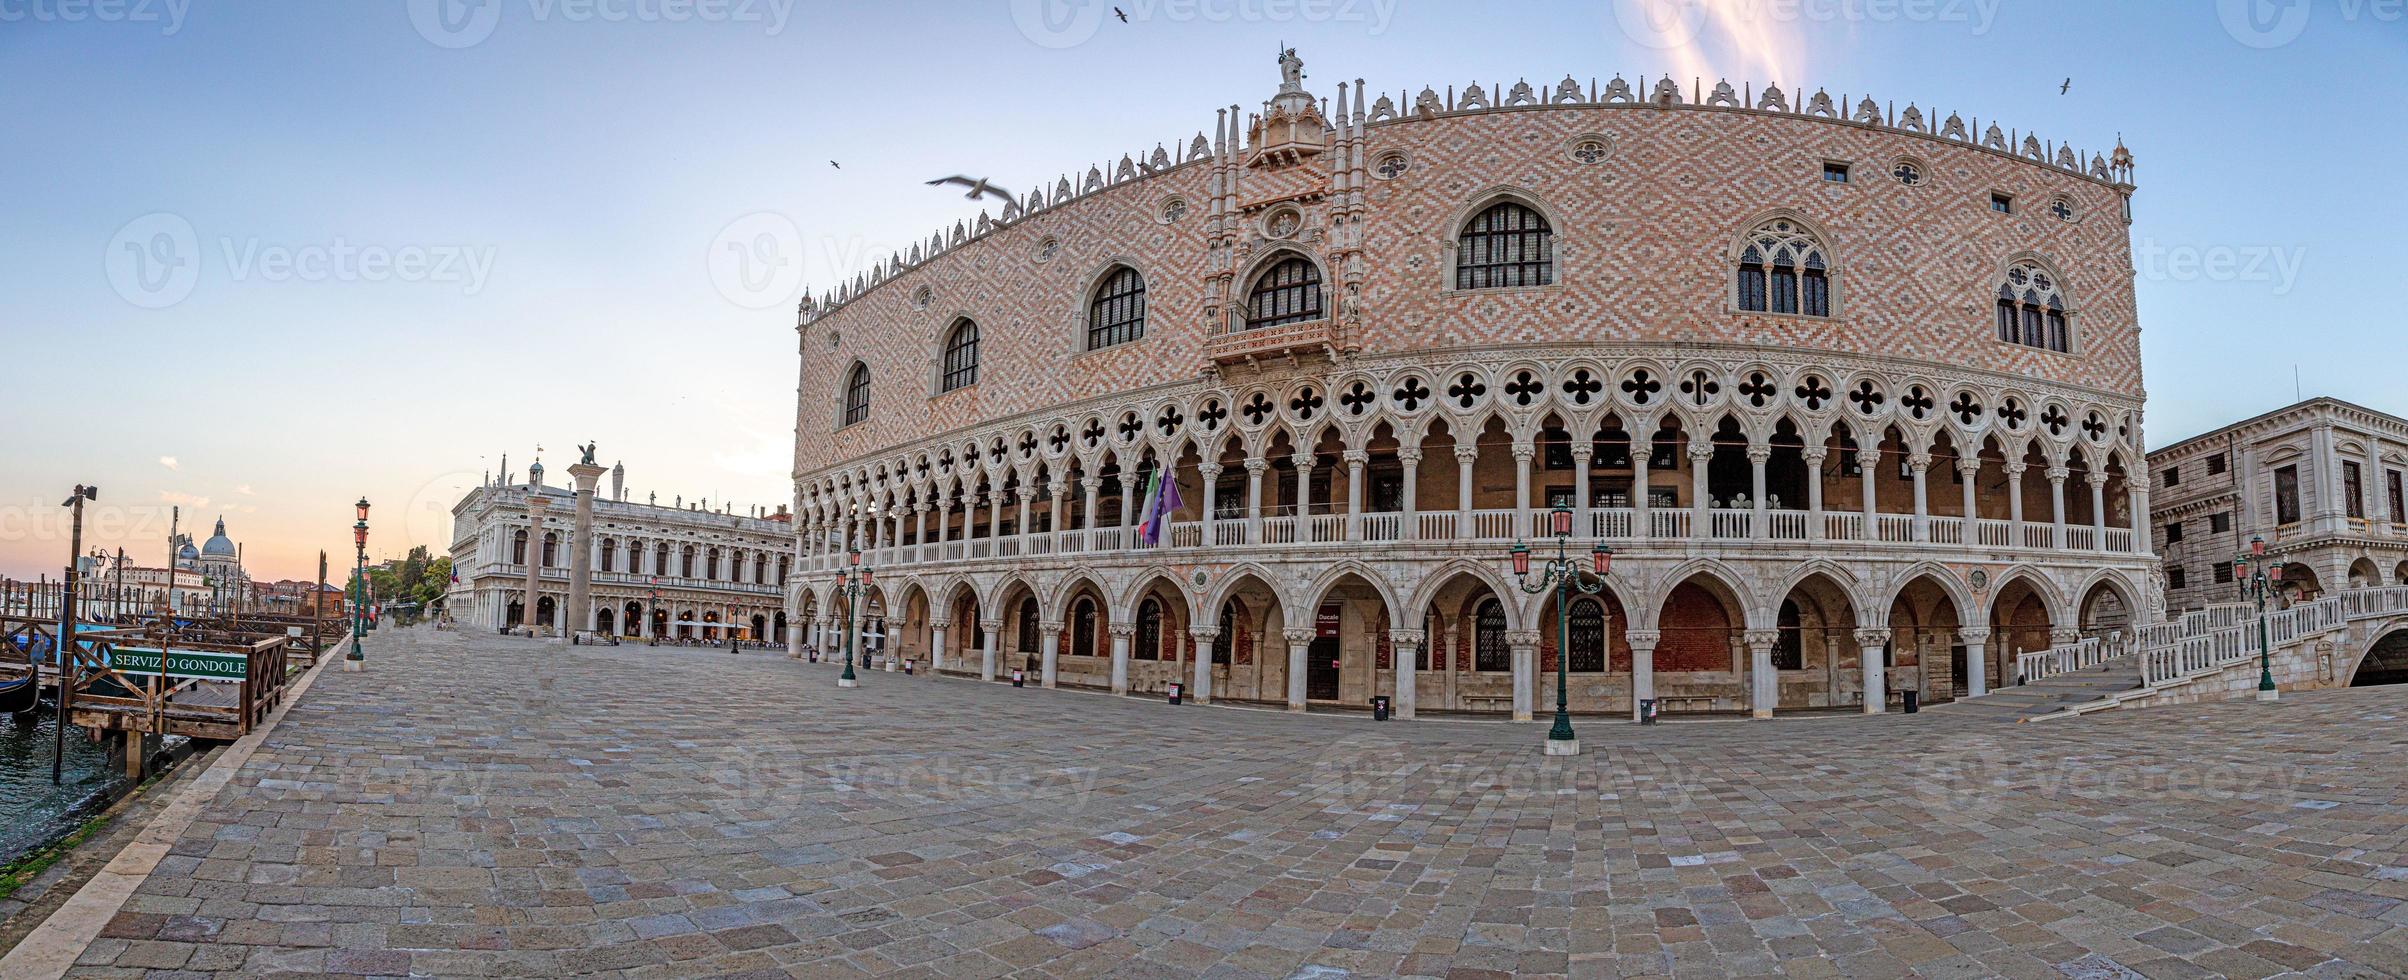 imagen de la plaza frente al palacio ducal en venecia sin visitantes en la temporada covid-19 foto